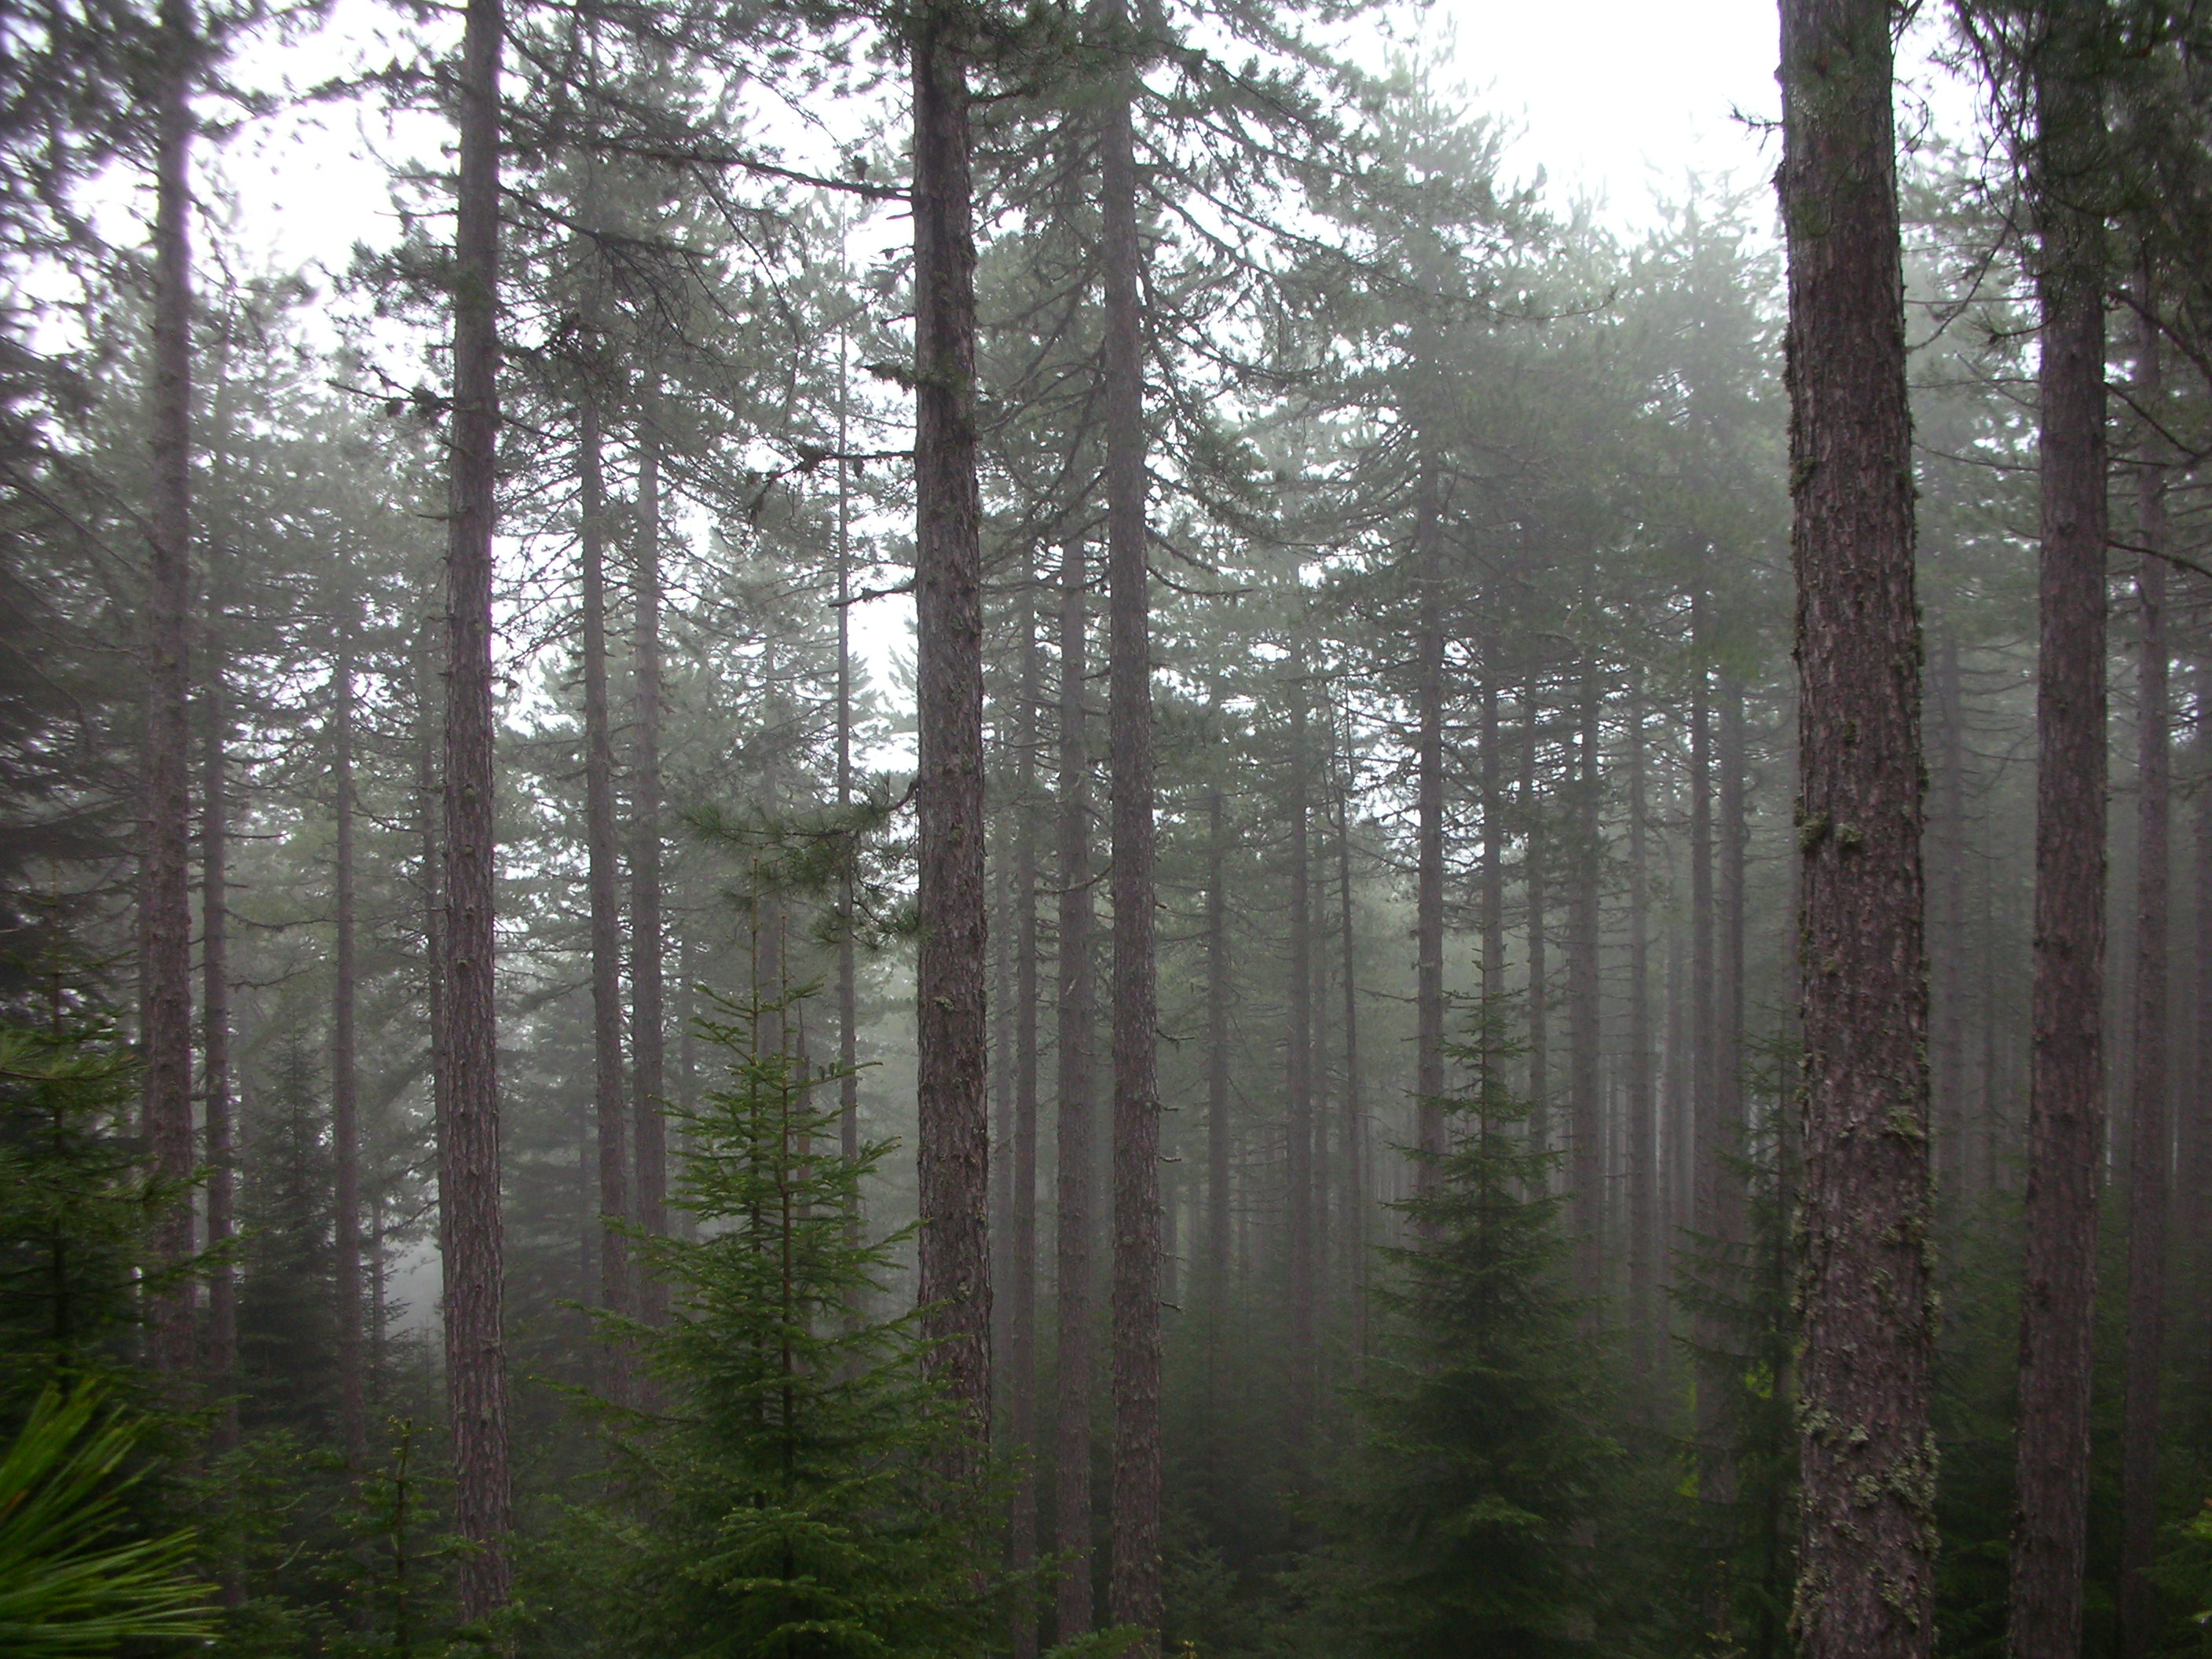 trees, forests, fog, mist - desktop wallpaper